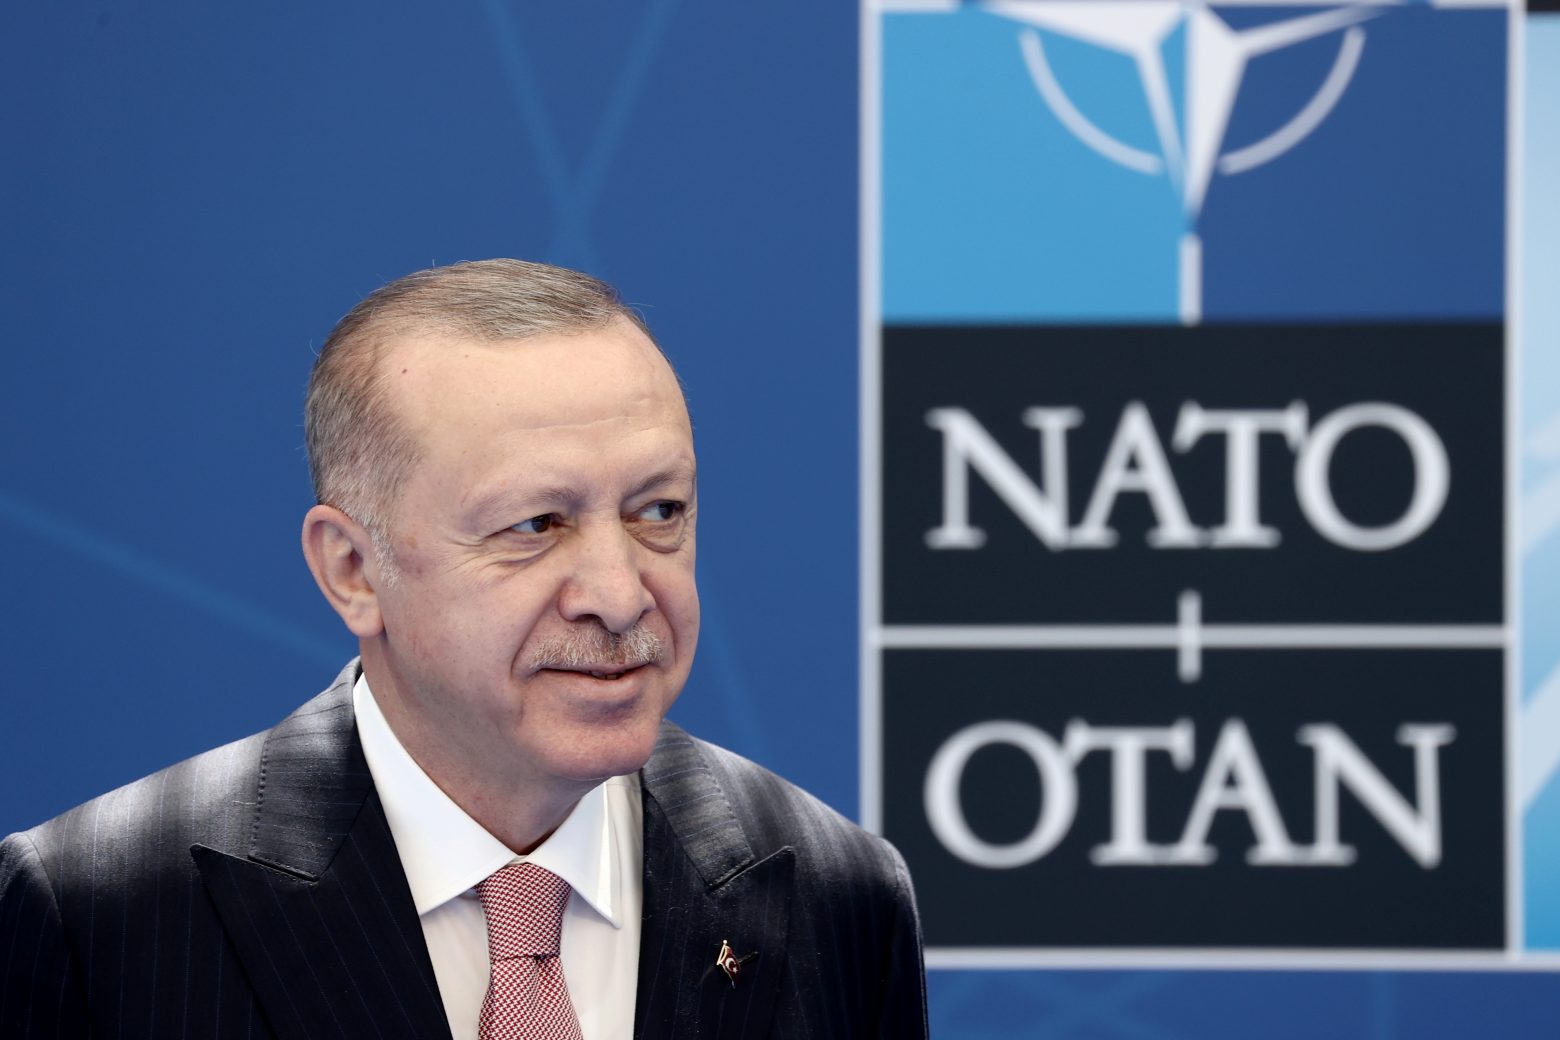 Ερντογάν: Η προοπτική μίας απευθείας σύγκρουσης ανάμεσα στο ΝΑΤΟ και την Ρωσία είναι ανησυχητική